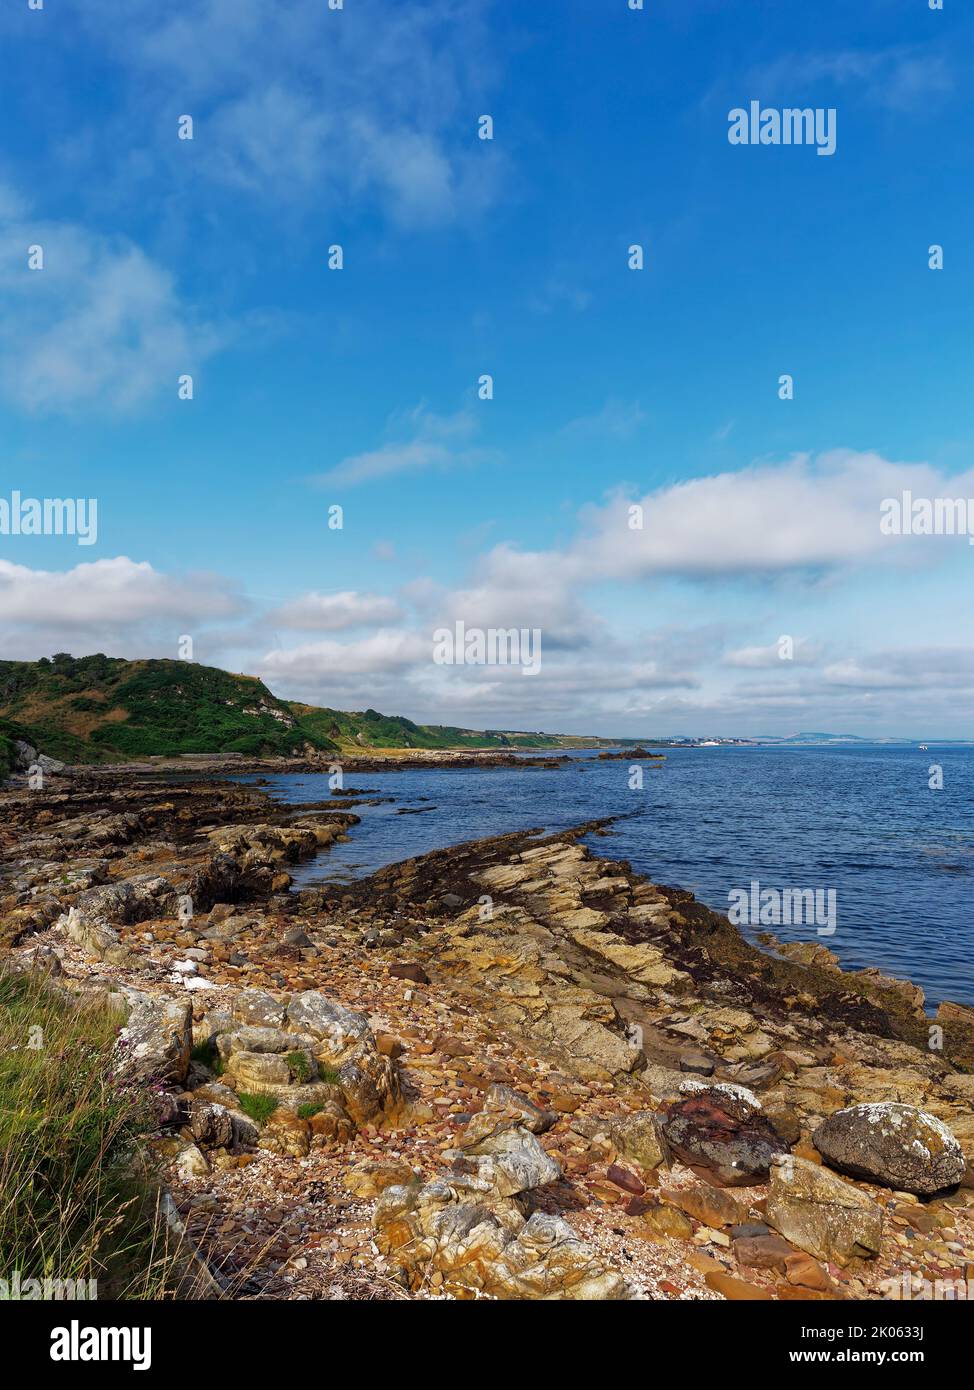 Los dedos irregulares de las rocas de arenisca sobresalen en la bahía de St Andrews desde Buddo Ness en la ruta costera de Fife en una mañana de verano. Foto de stock